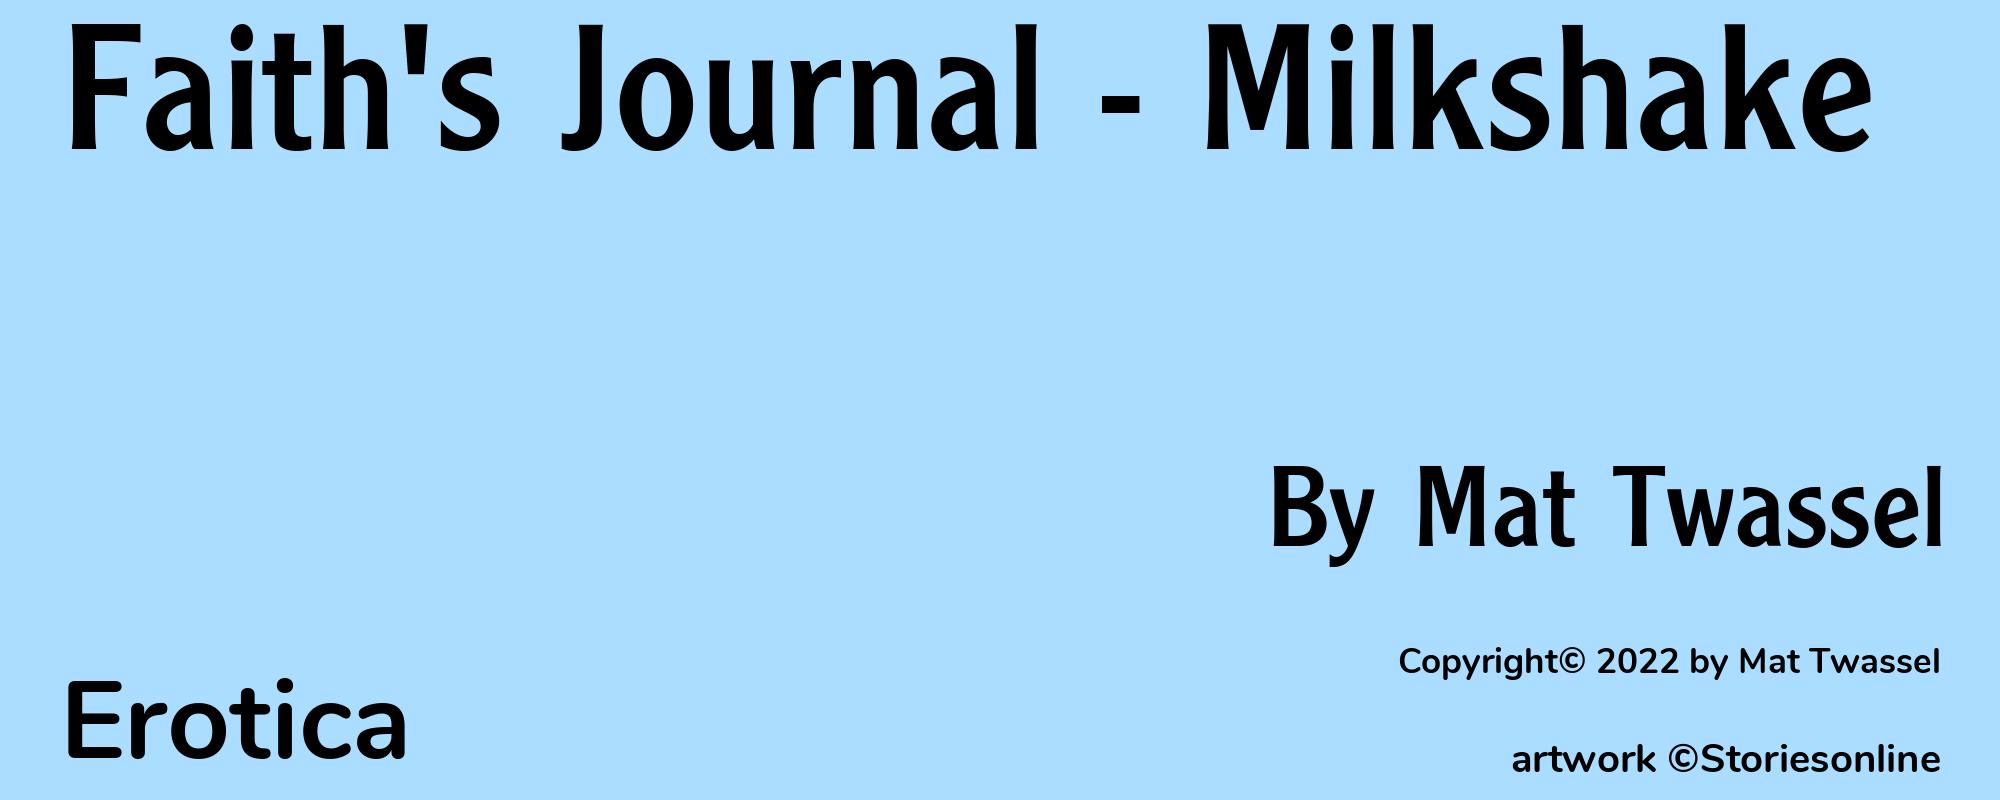 Faith's Journal - Milkshake - Cover